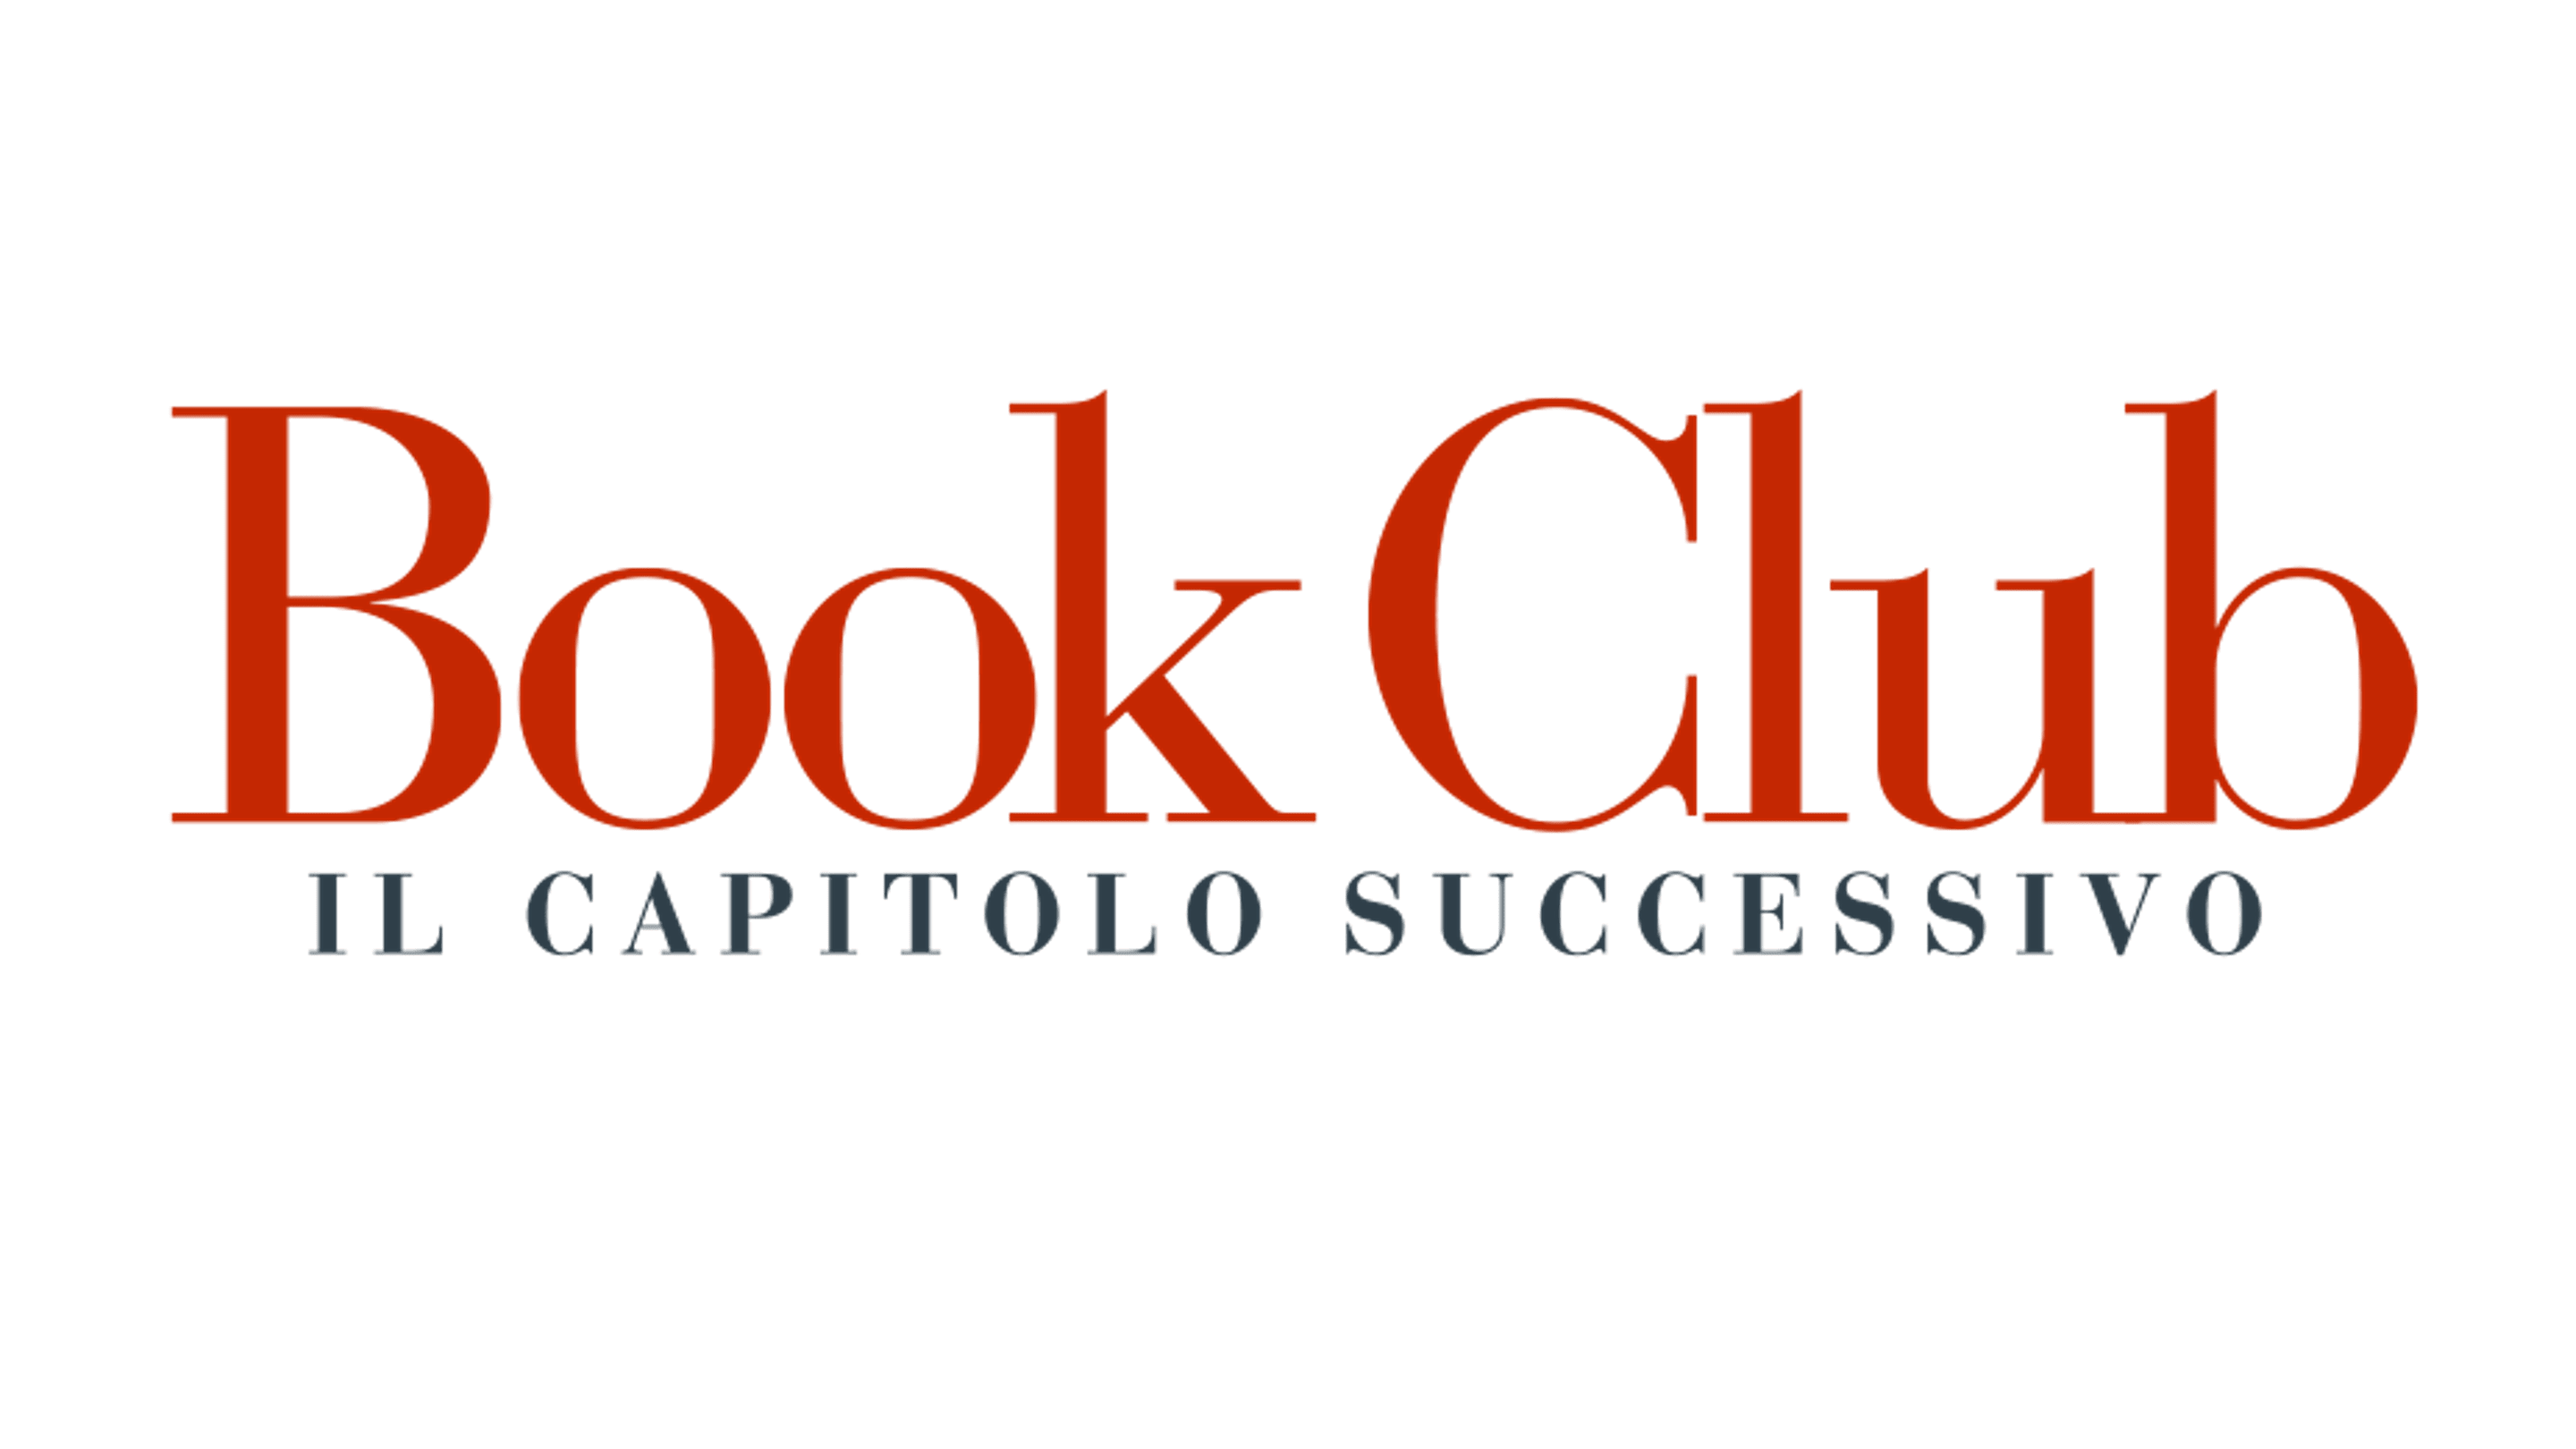 Book Club - Il capitolo successivo